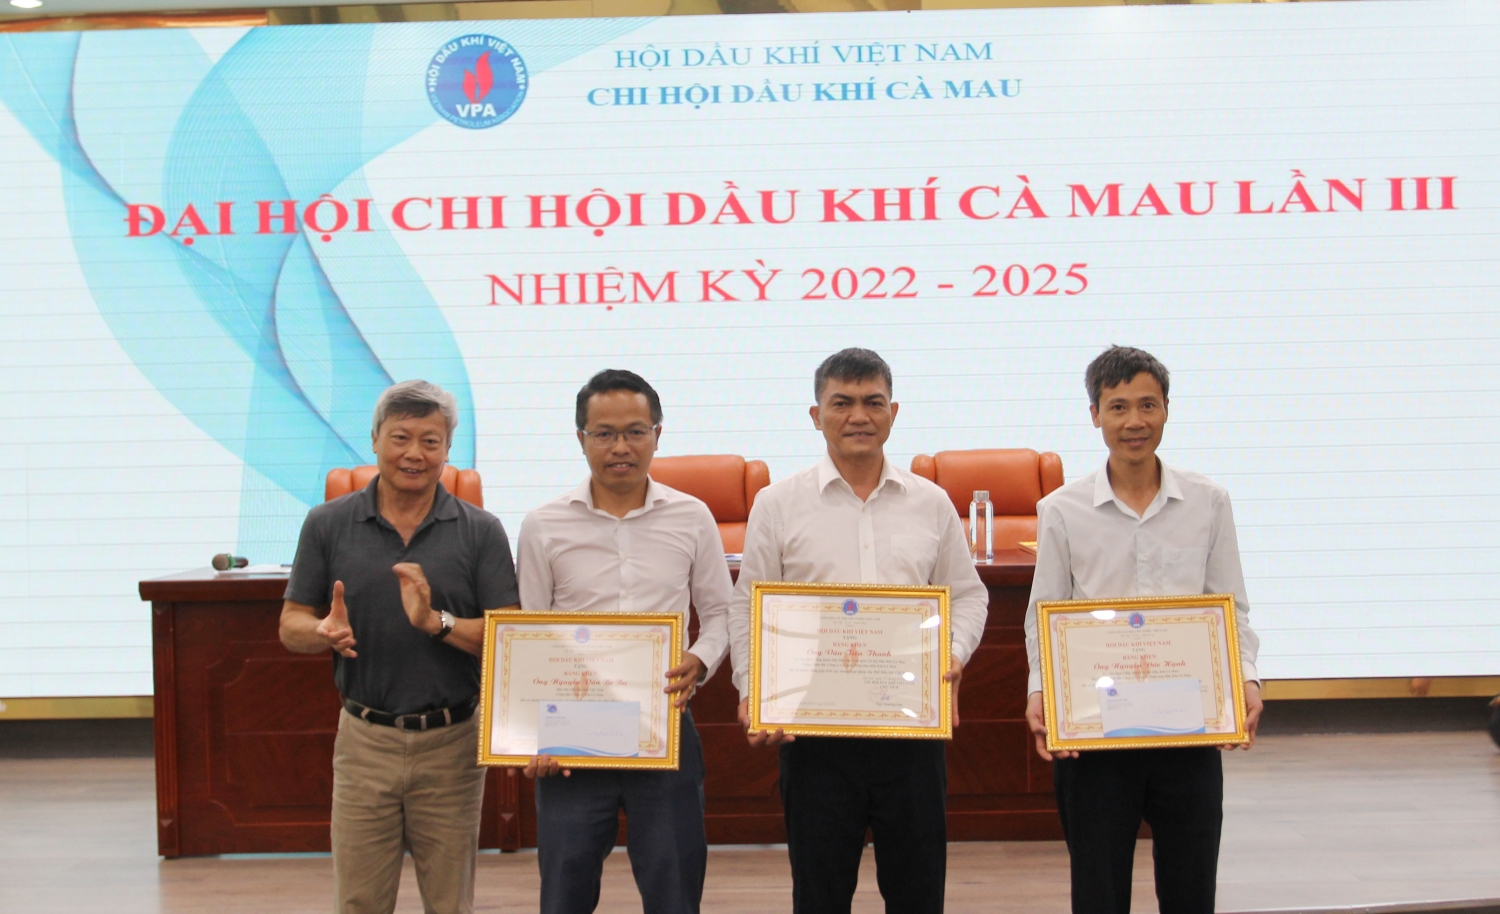 Chi hội Dầu khí Cà Mau tổ chức thành công Đại hội lần III, nhiệm kỳ 2022 - 2025